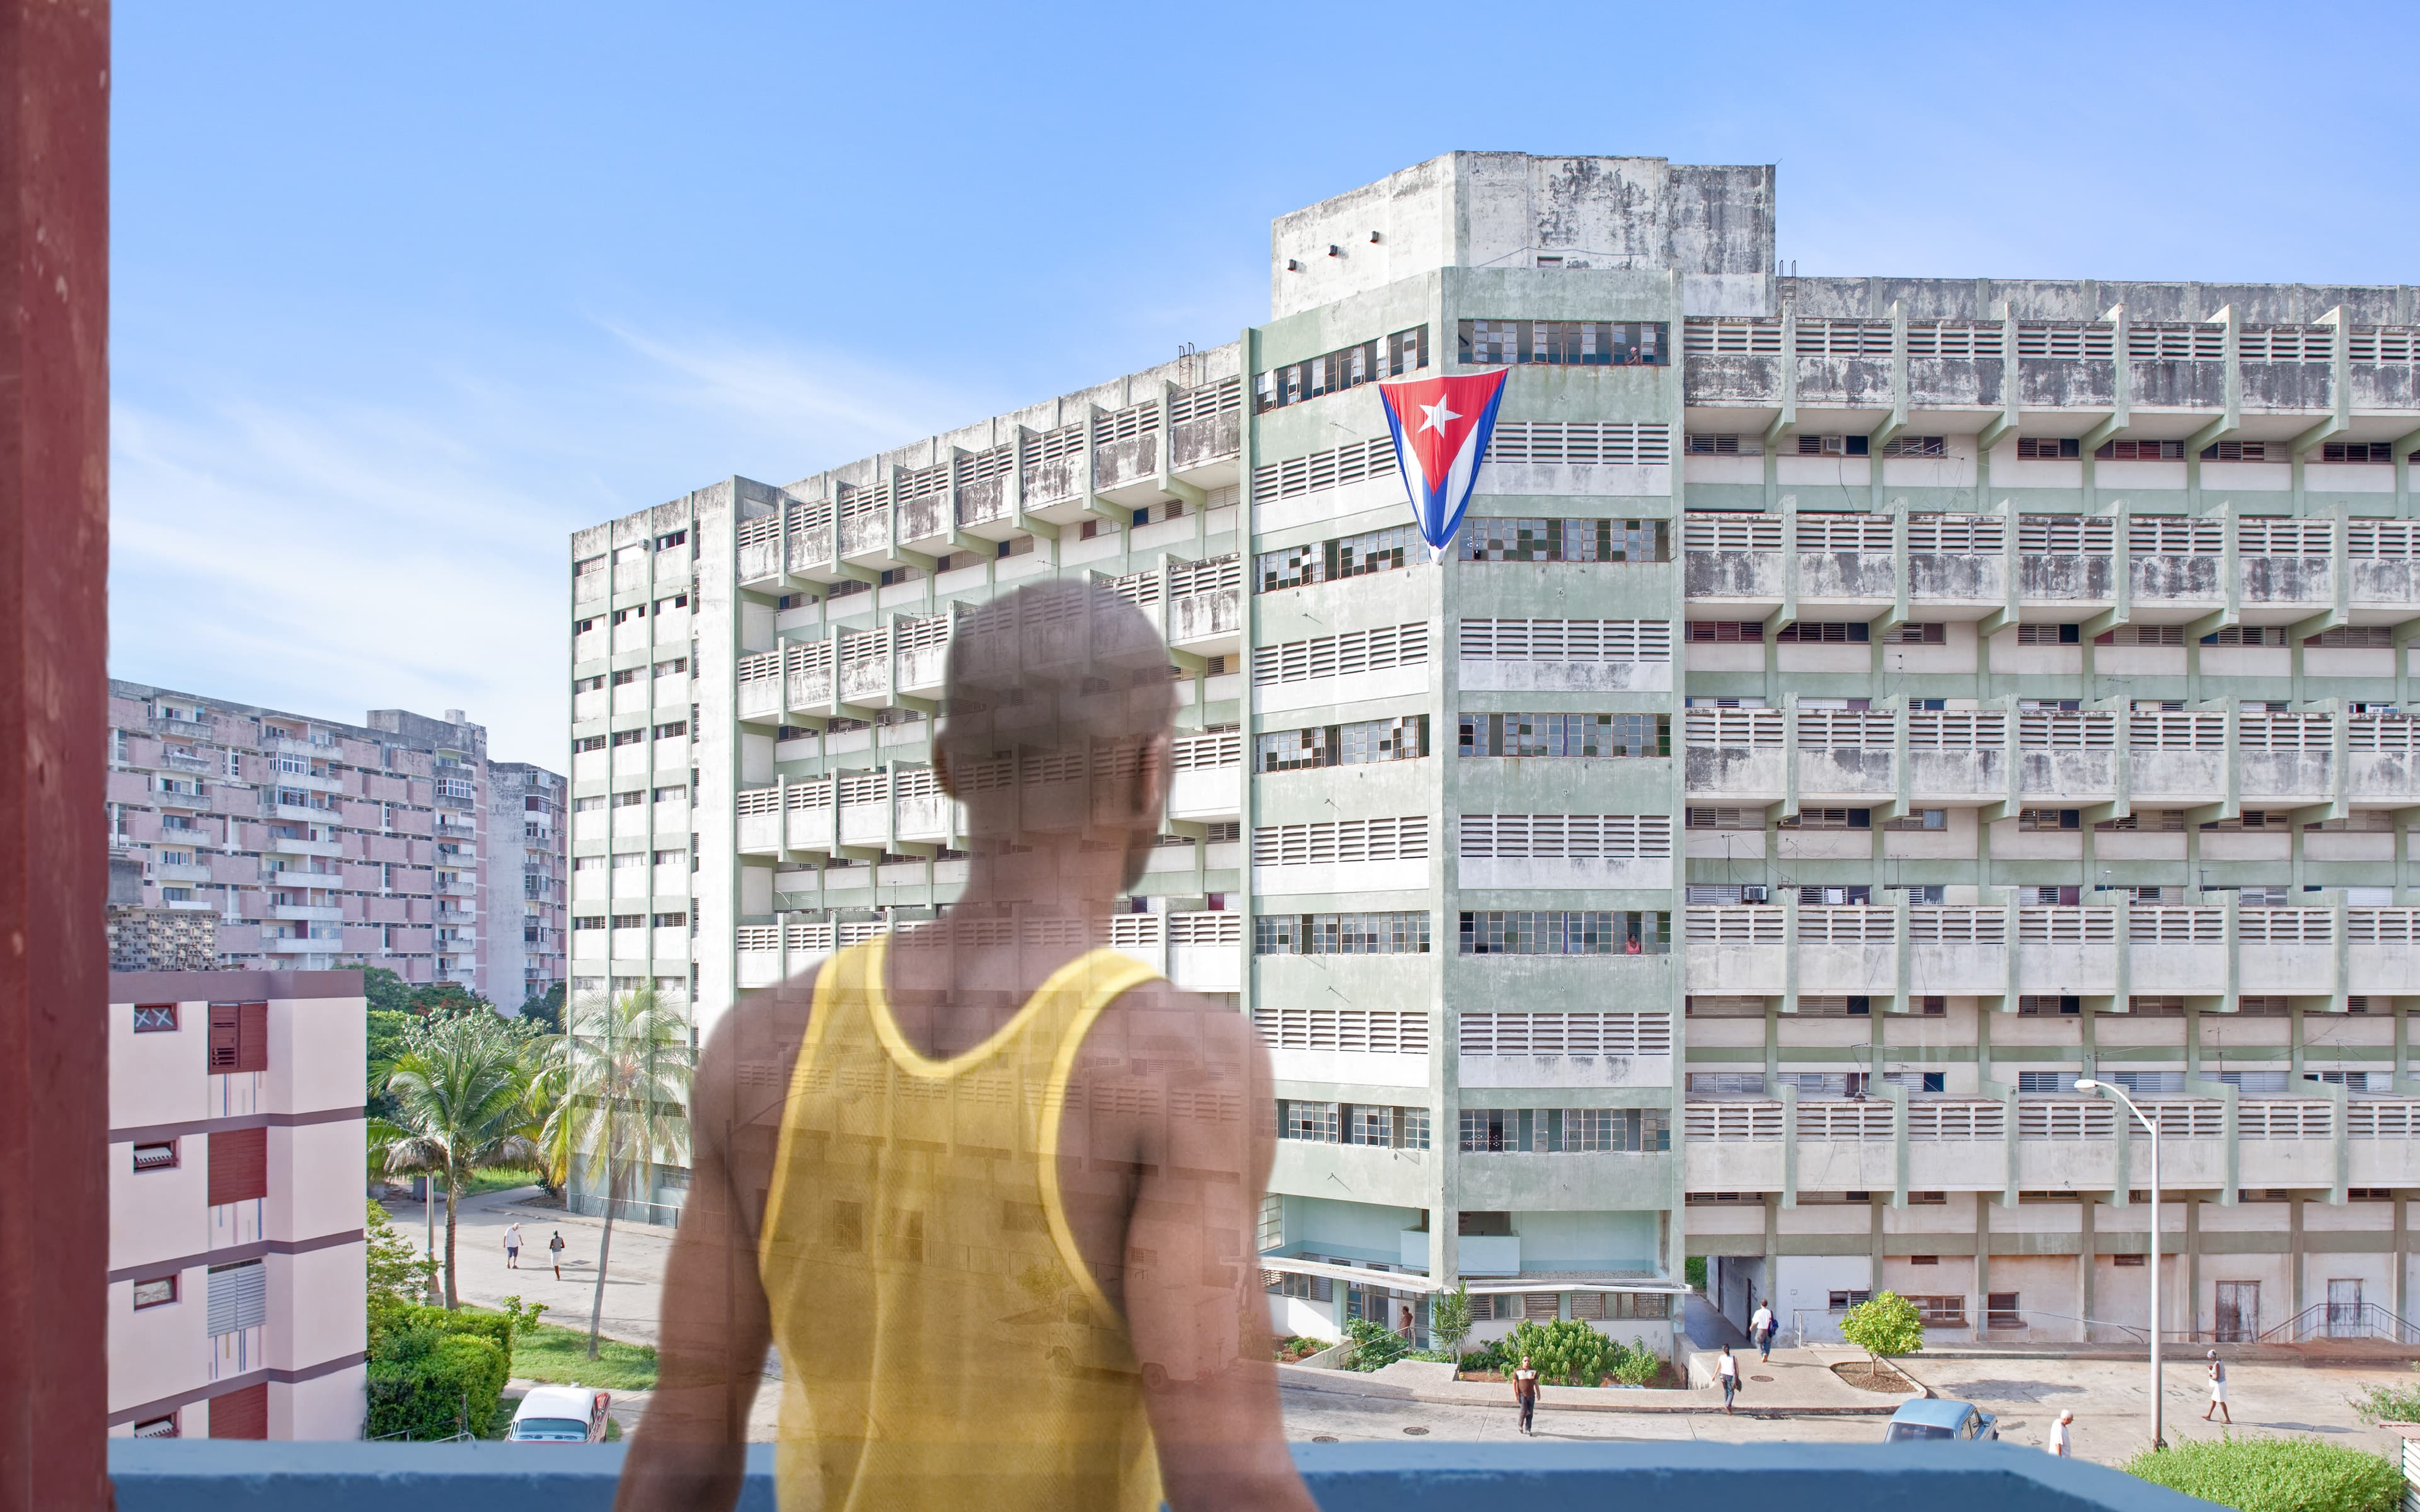 Reparto Camilo Cienfuegos #1, Havana, Cuba, 2012